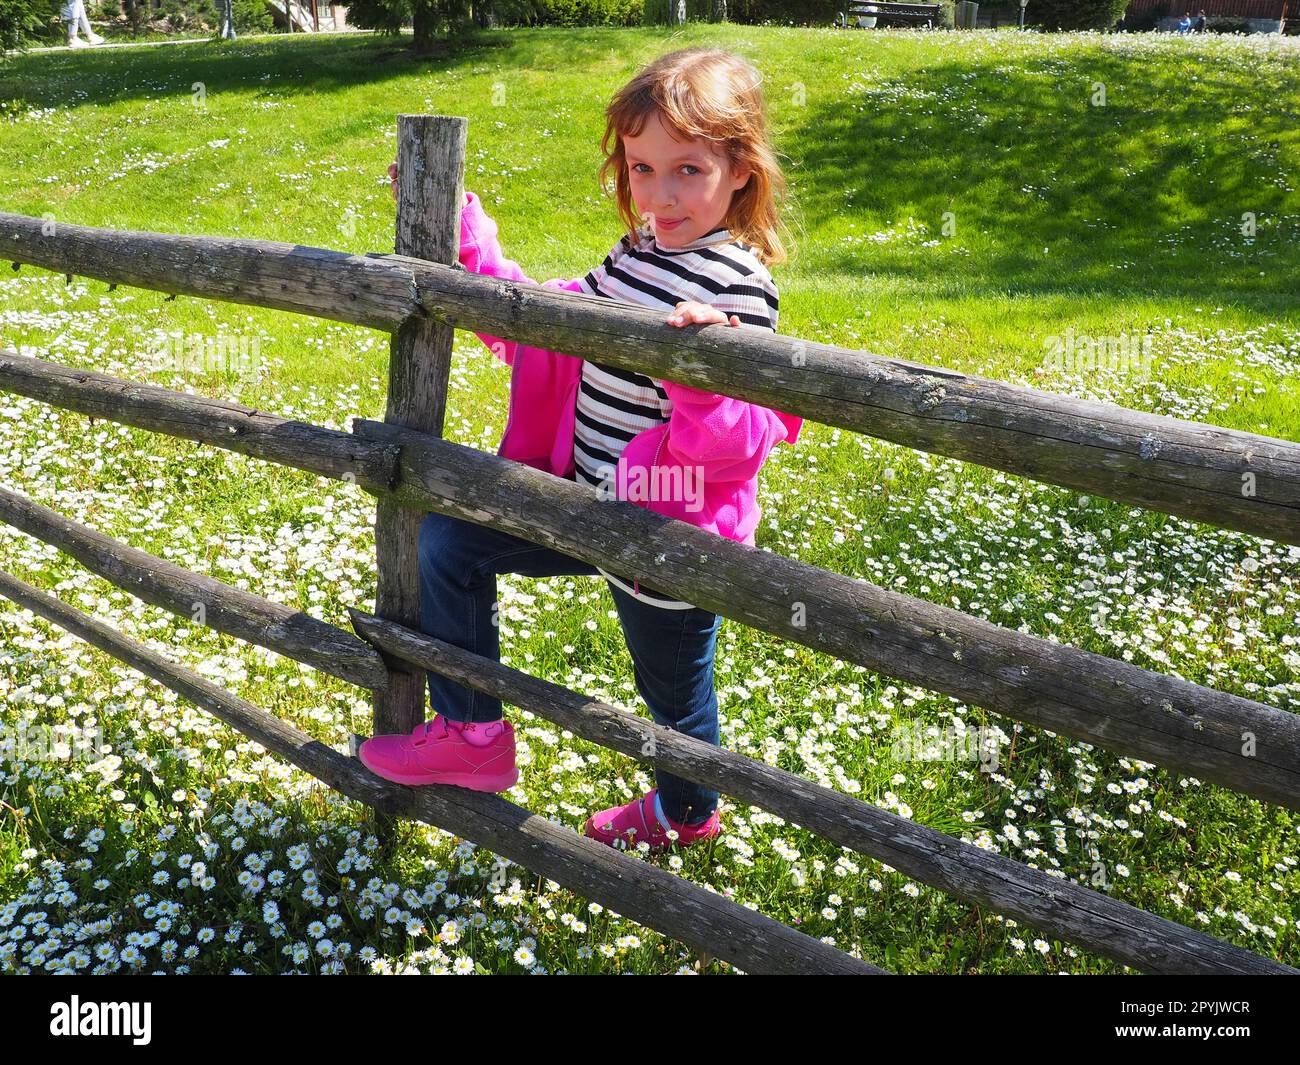 Stanisici, Bijelina, Bosnia ed Erzegovina, 25 aprile 2021. Una bambina di 7 anni con un maglione rosa, jeans e una blusa a righe si trova vicino a una recinzione rurale di legno e sorride. Prato con fiori selvatici Foto Stock